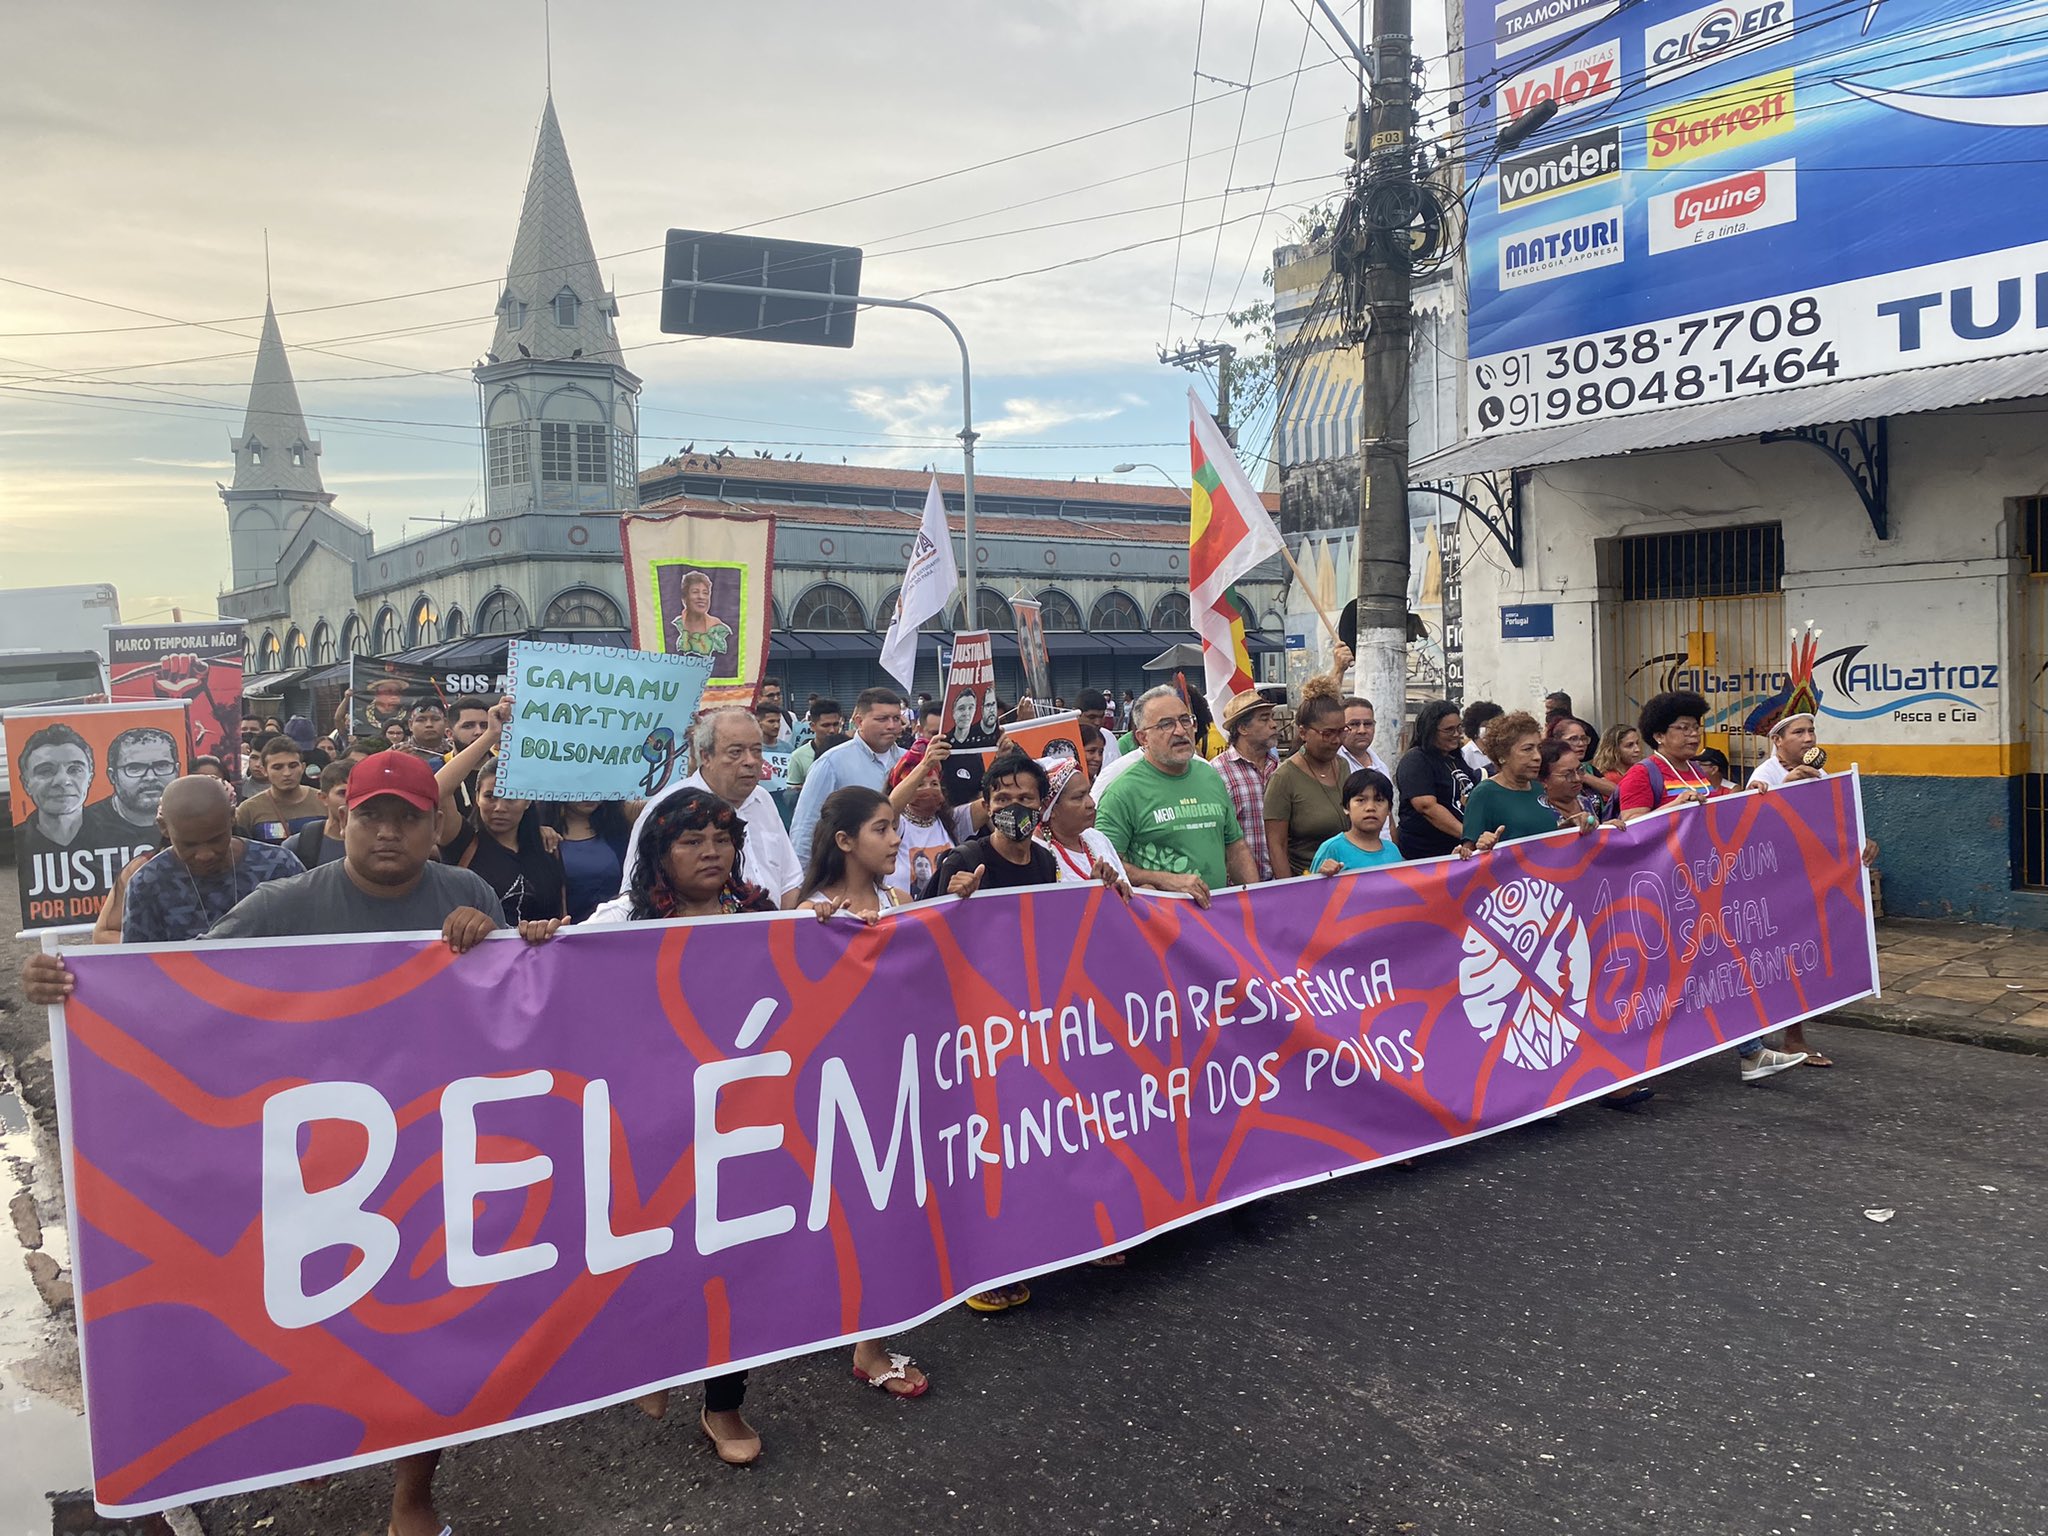 Lançamento do X FOSPA ocorreu com um ato em defesa dos povos no dia 30 de junho em Belém (PA) (Foto: Michele Jaques / Fospa Oficial)